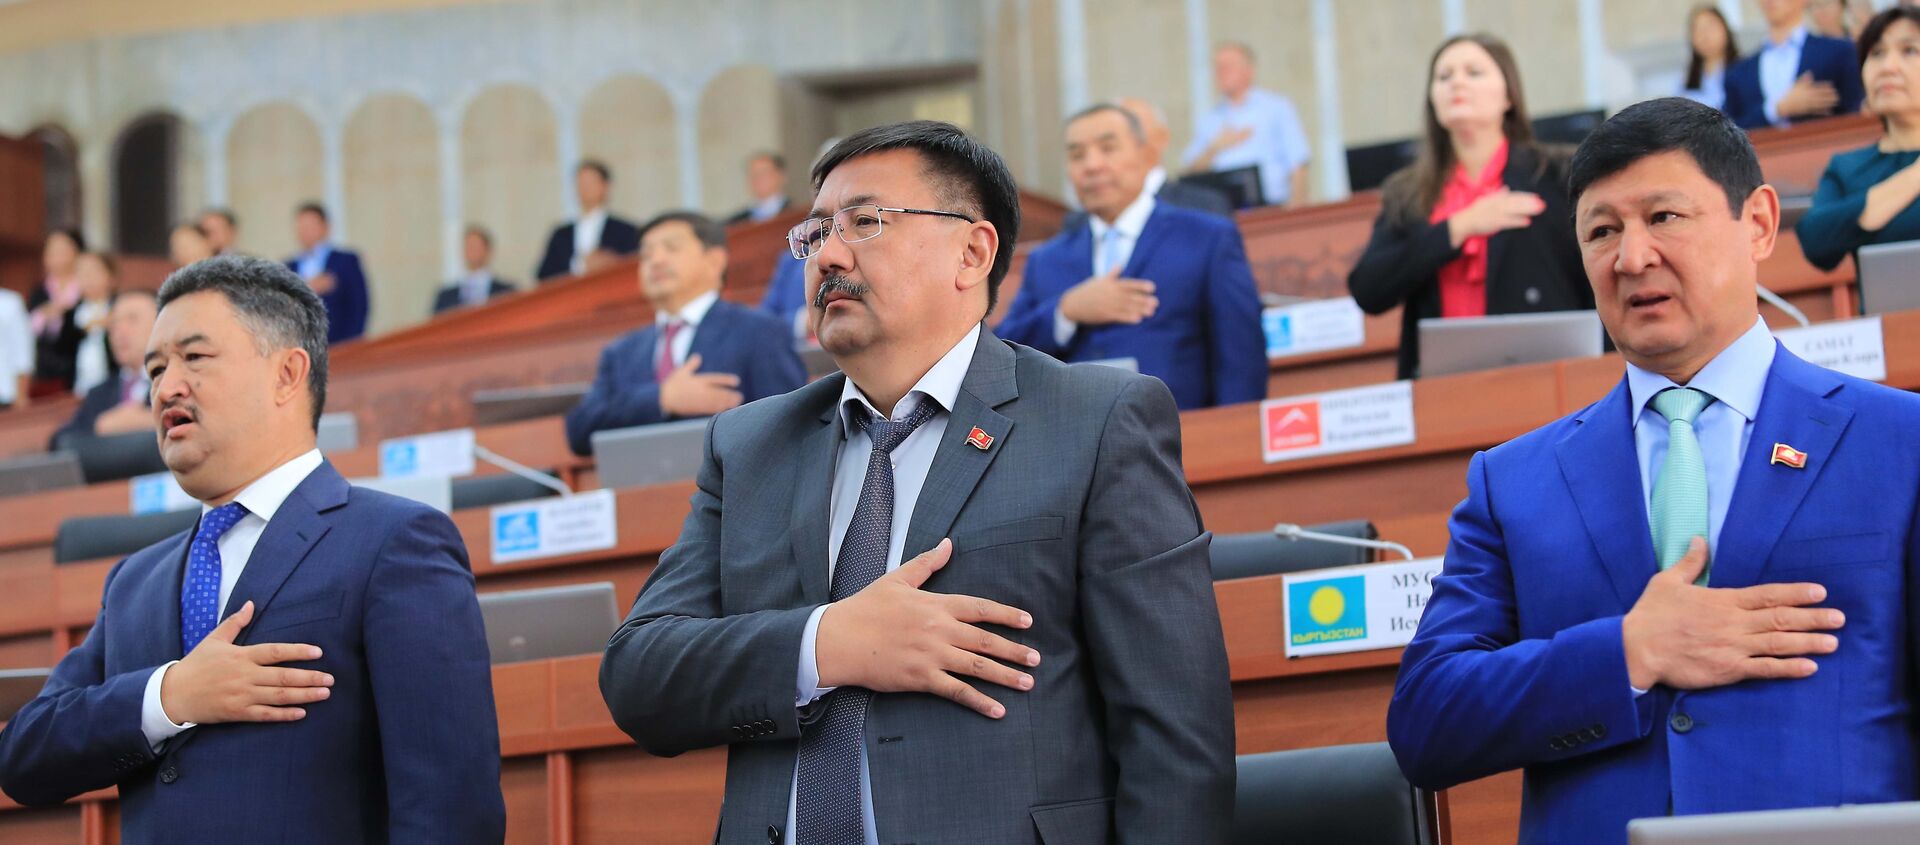 Официальное открытие очередной сессии Жогорку Кенеша VI созыва  - Sputnik Кыргызстан, 1920, 15.07.2021